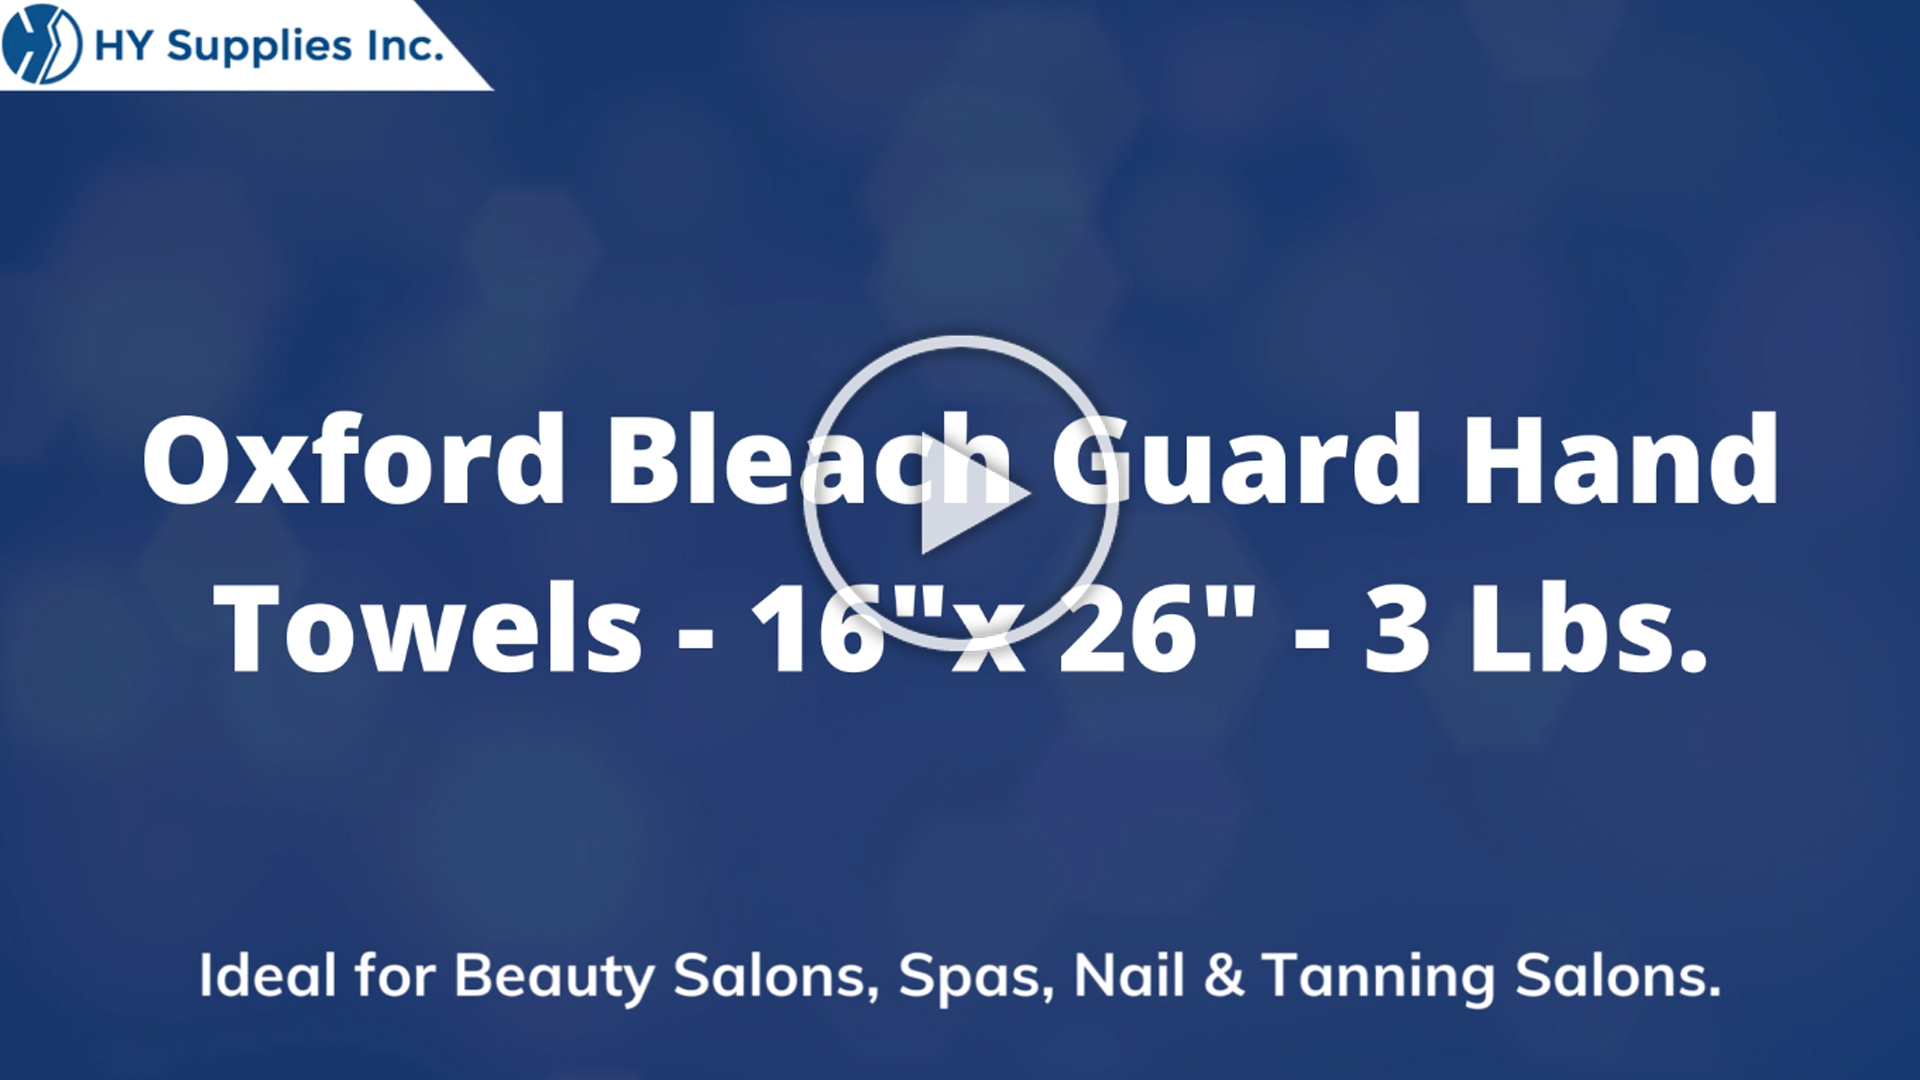 Oxford Bleach Guard Hand Towels - 16"x 26" - 3 Lbs. 